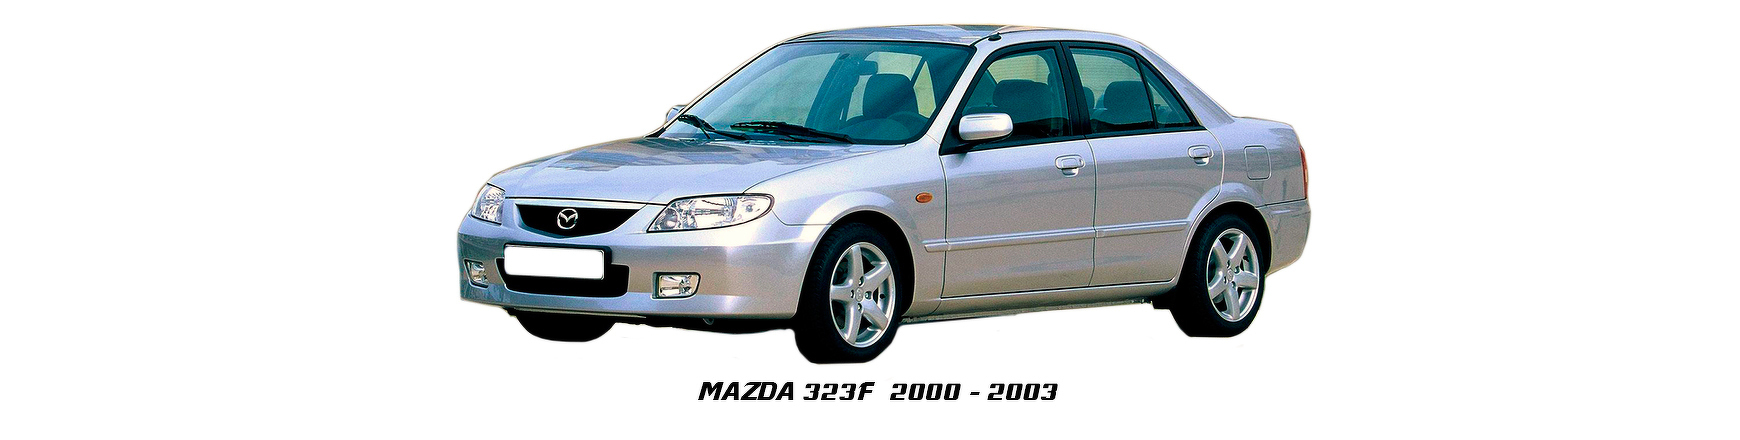 Piezas y Recambios de Mazda 323 F de 2000 a 2003 | Visite Veramauto.es